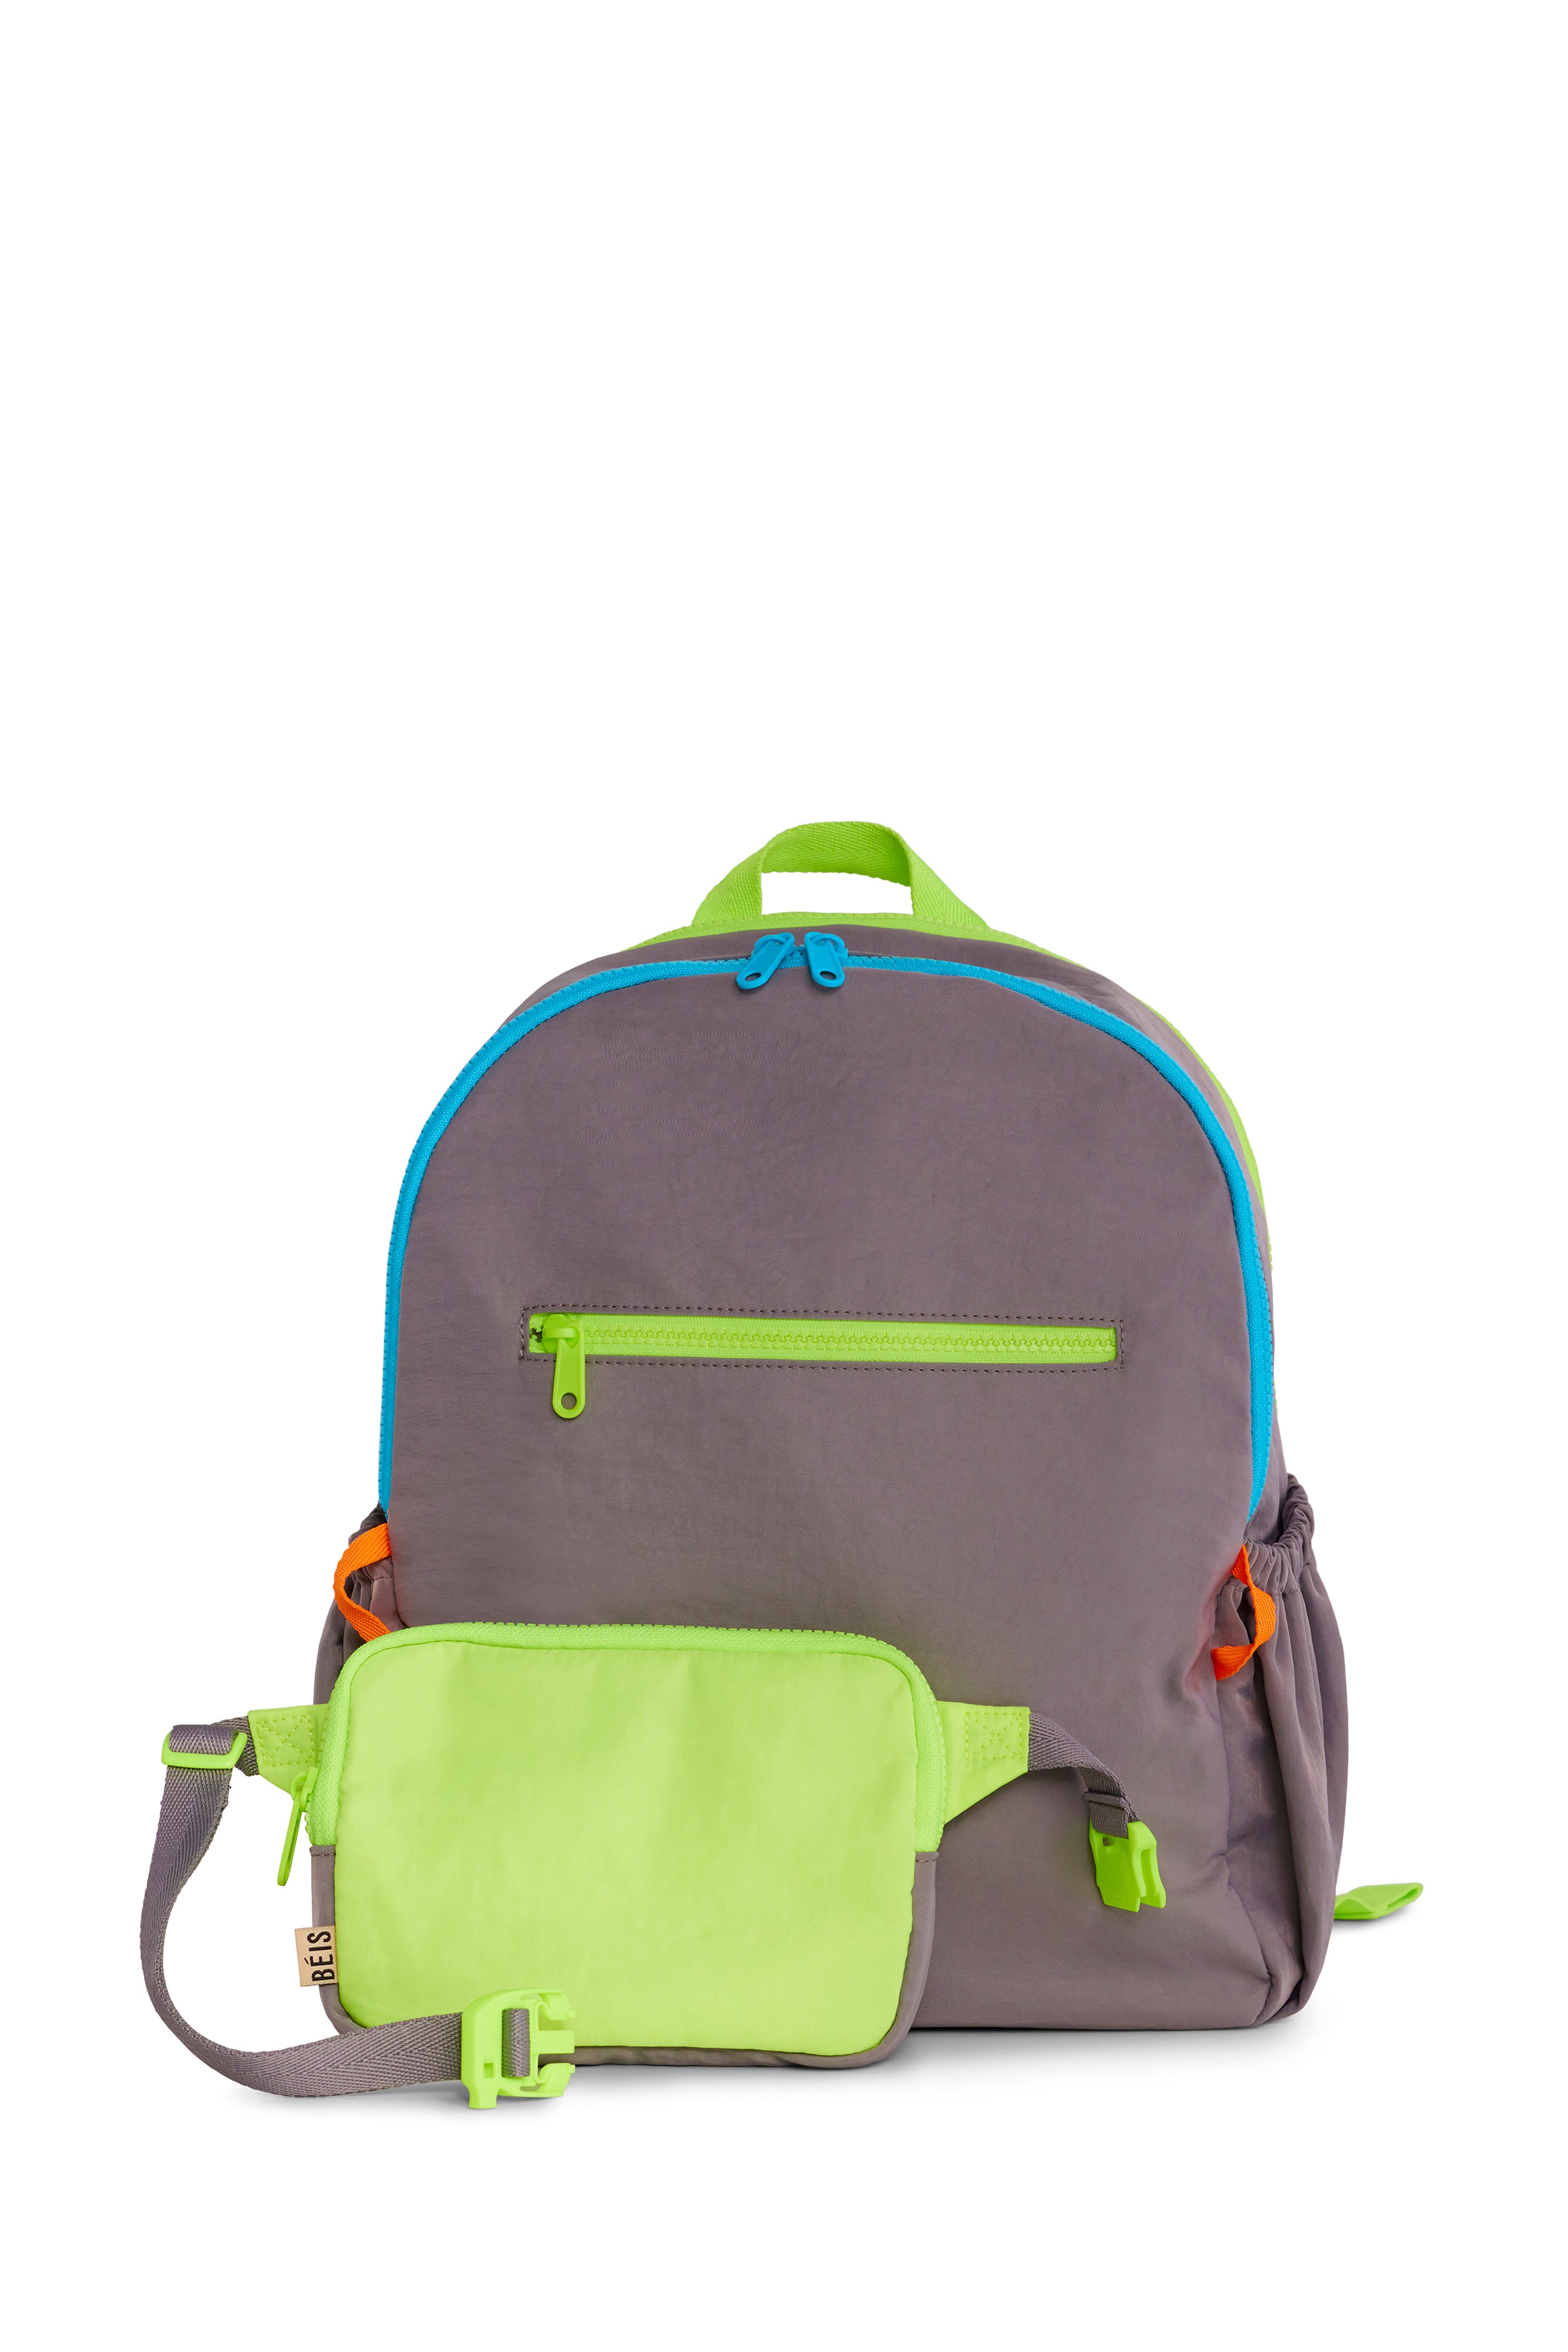 Lil' Adventurer Backpack Pattern: Kids Backpack Pattern, Toddler Backpack  Pattern - Etsy